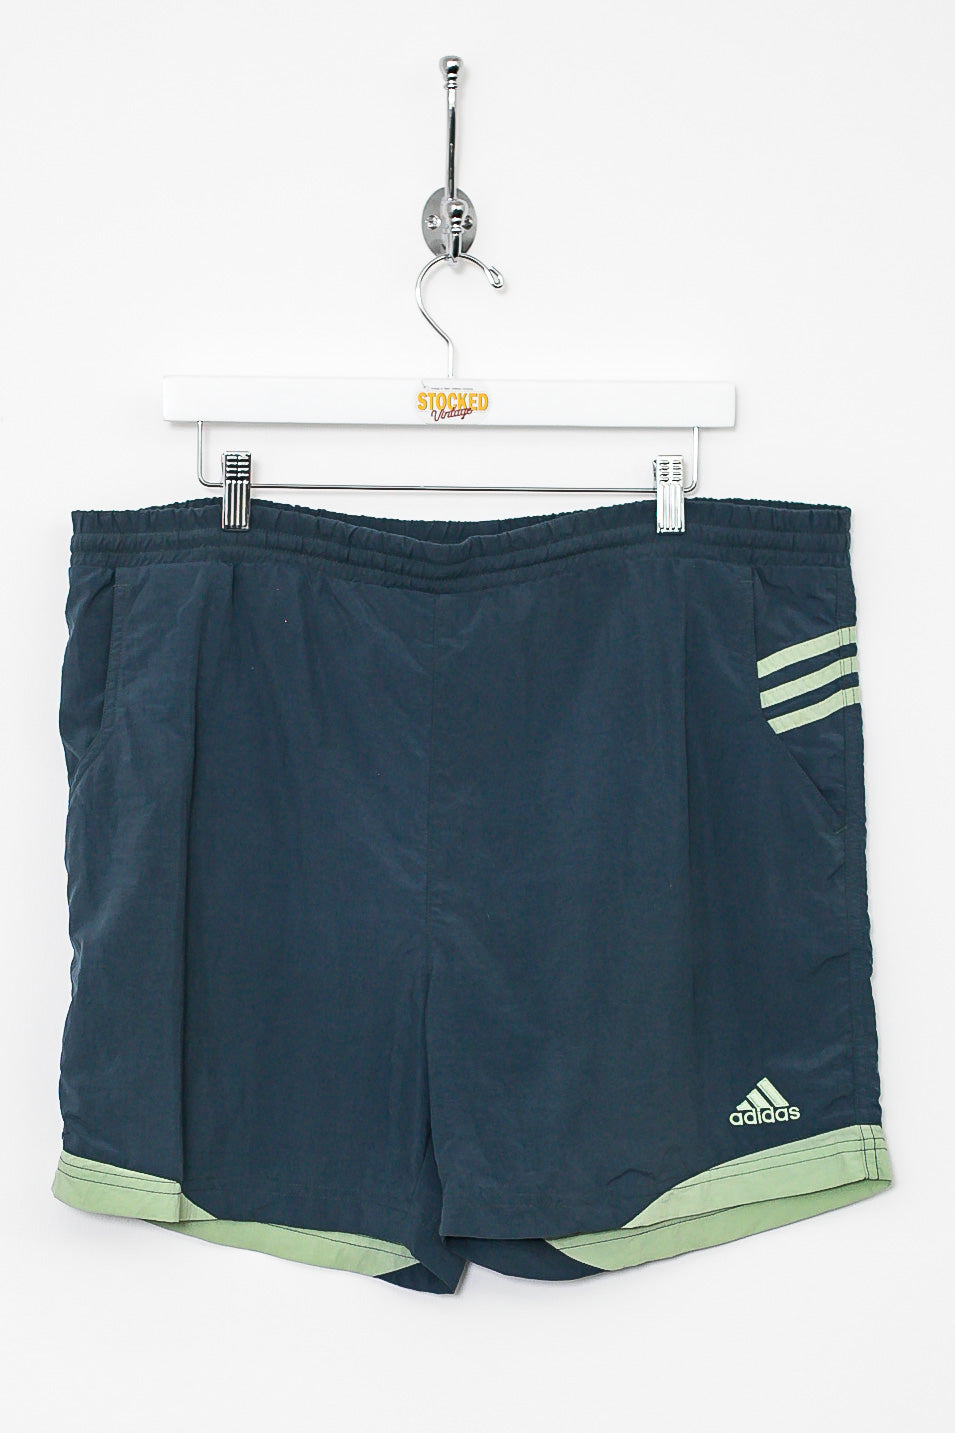 00s Adidas Shorts (L)